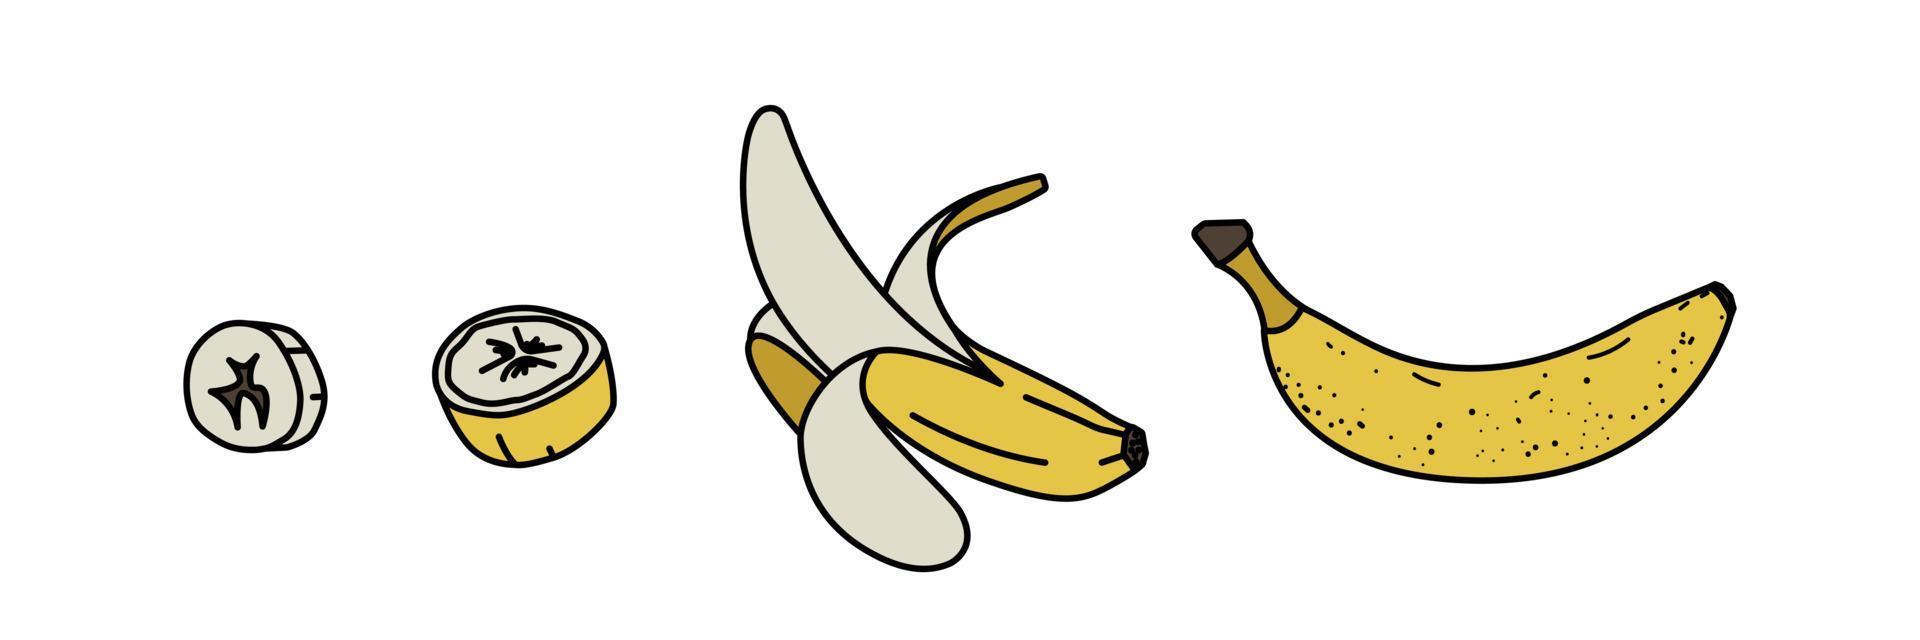 boceto conjunto de plátanos. racimos de fruta, plátano medio pelado, abierto y cortado. estilo plano Ilustración vectorial sobre fondo blanco vector